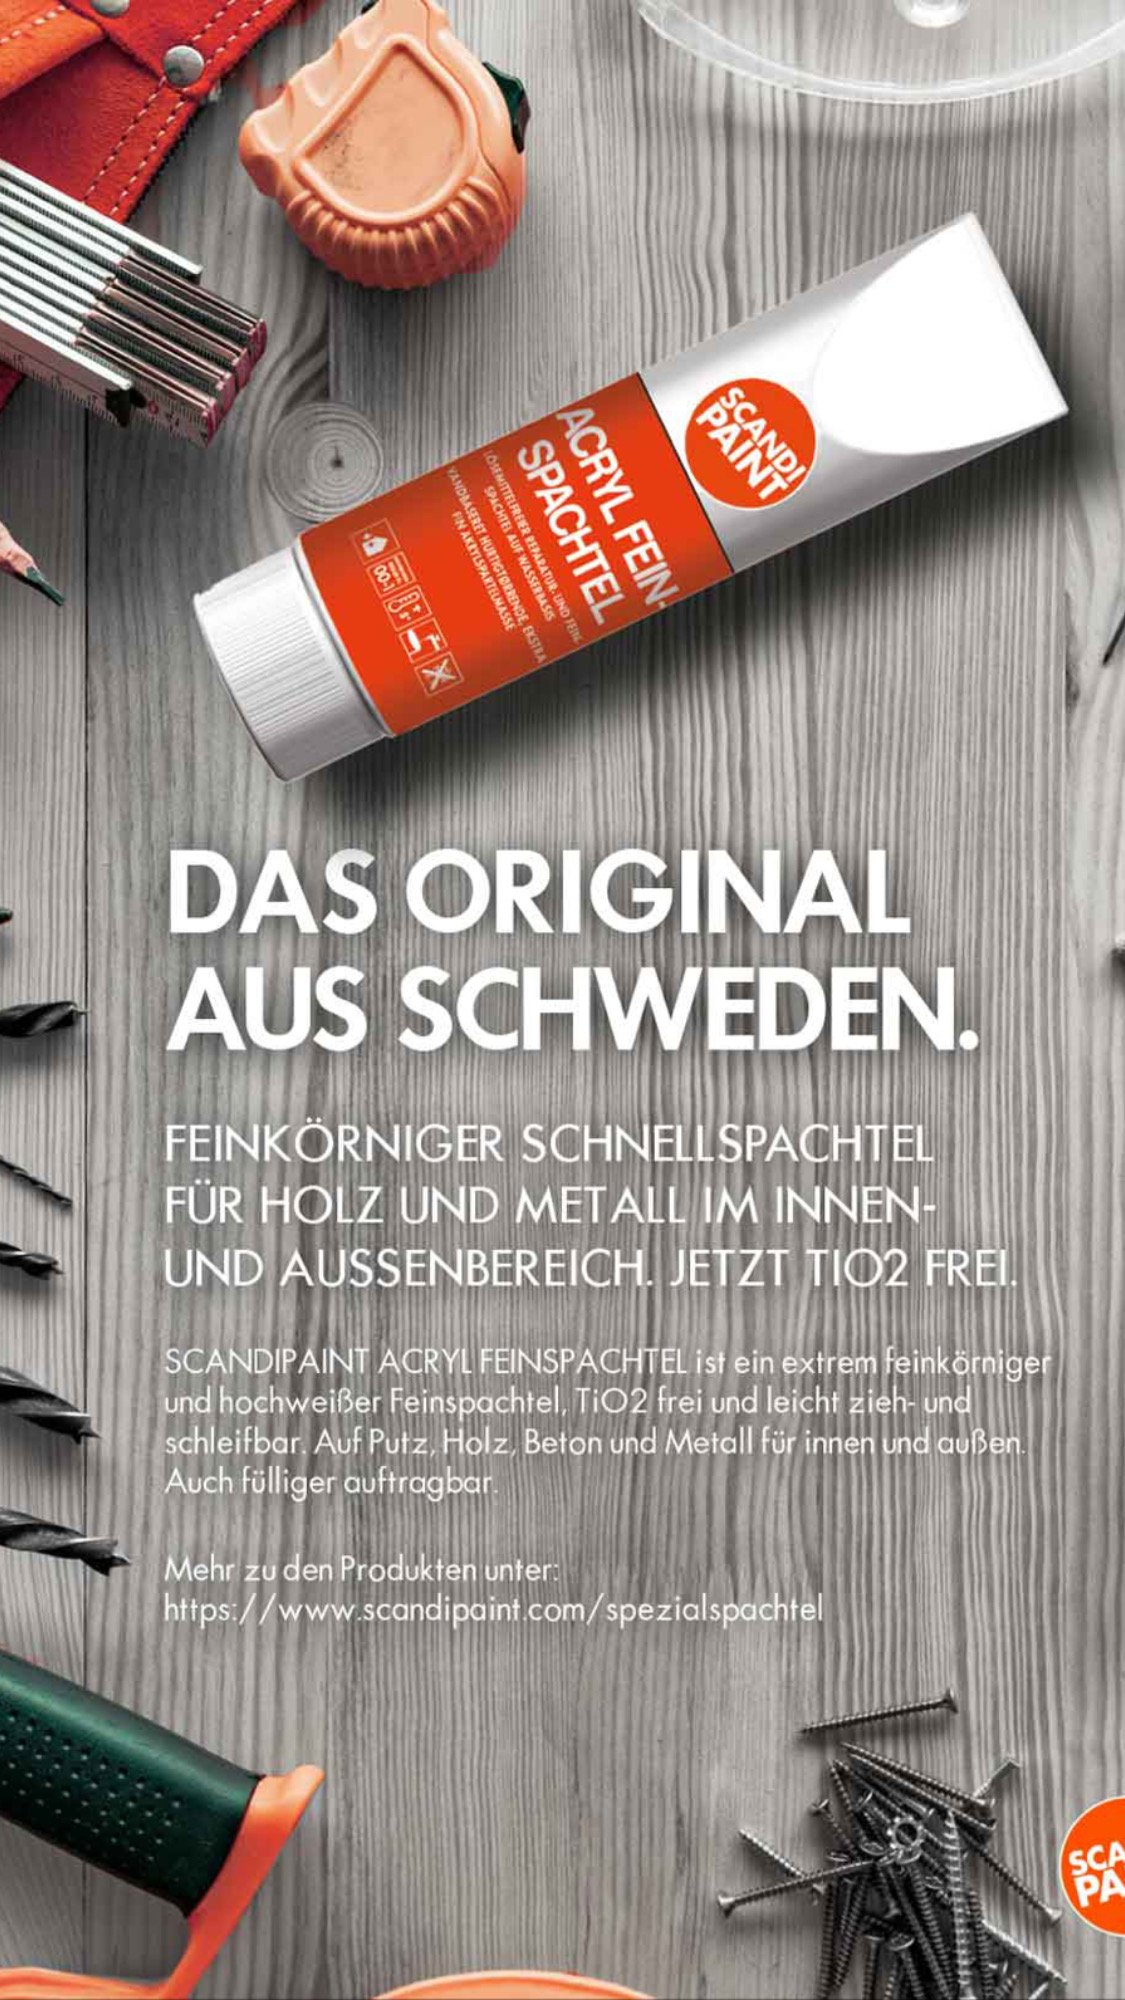 Acryl Feinspachtel - der klassische Schnellspachtel & Reparaturspachtel —  SCANDIPAINT GmbH & Co KG